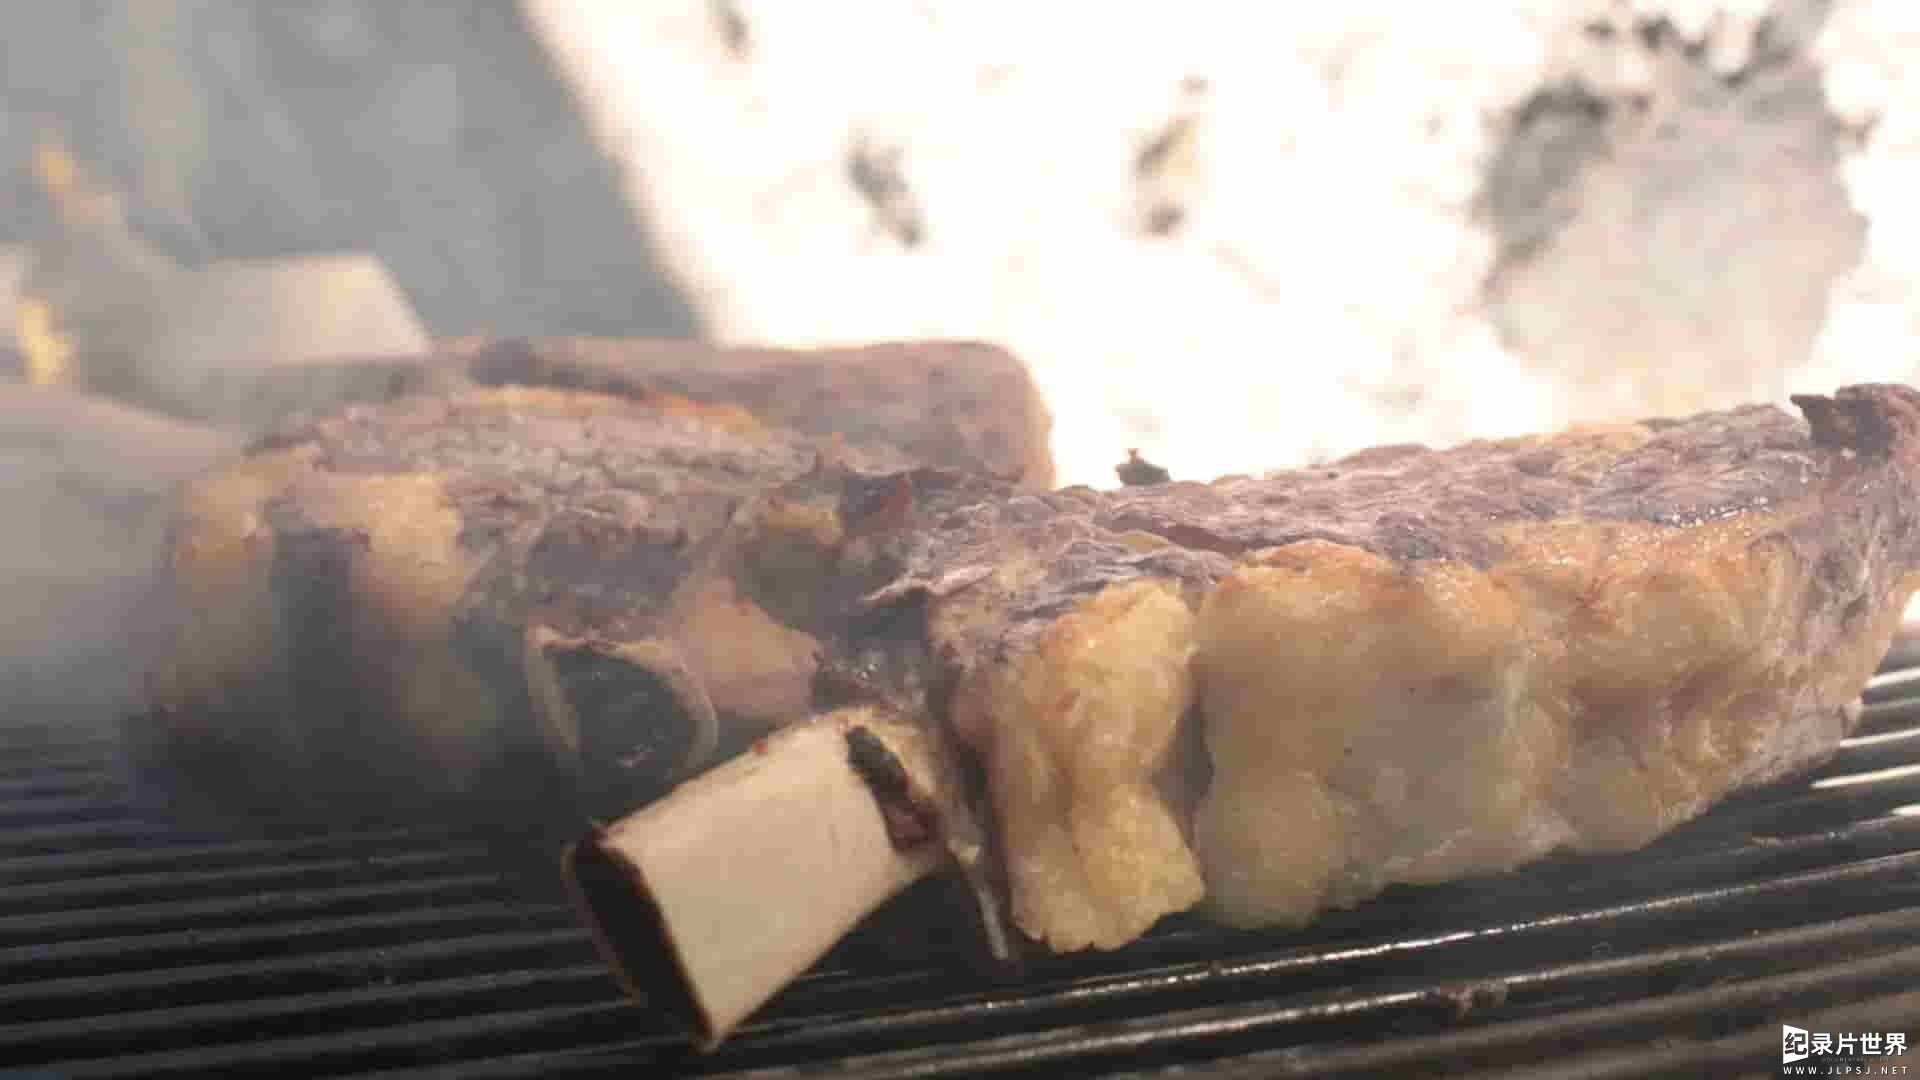 法国纪录片《极品牛排解码之旅/牛扒革命/牛扒进化史 Steak (R)evolution 2014》全1集